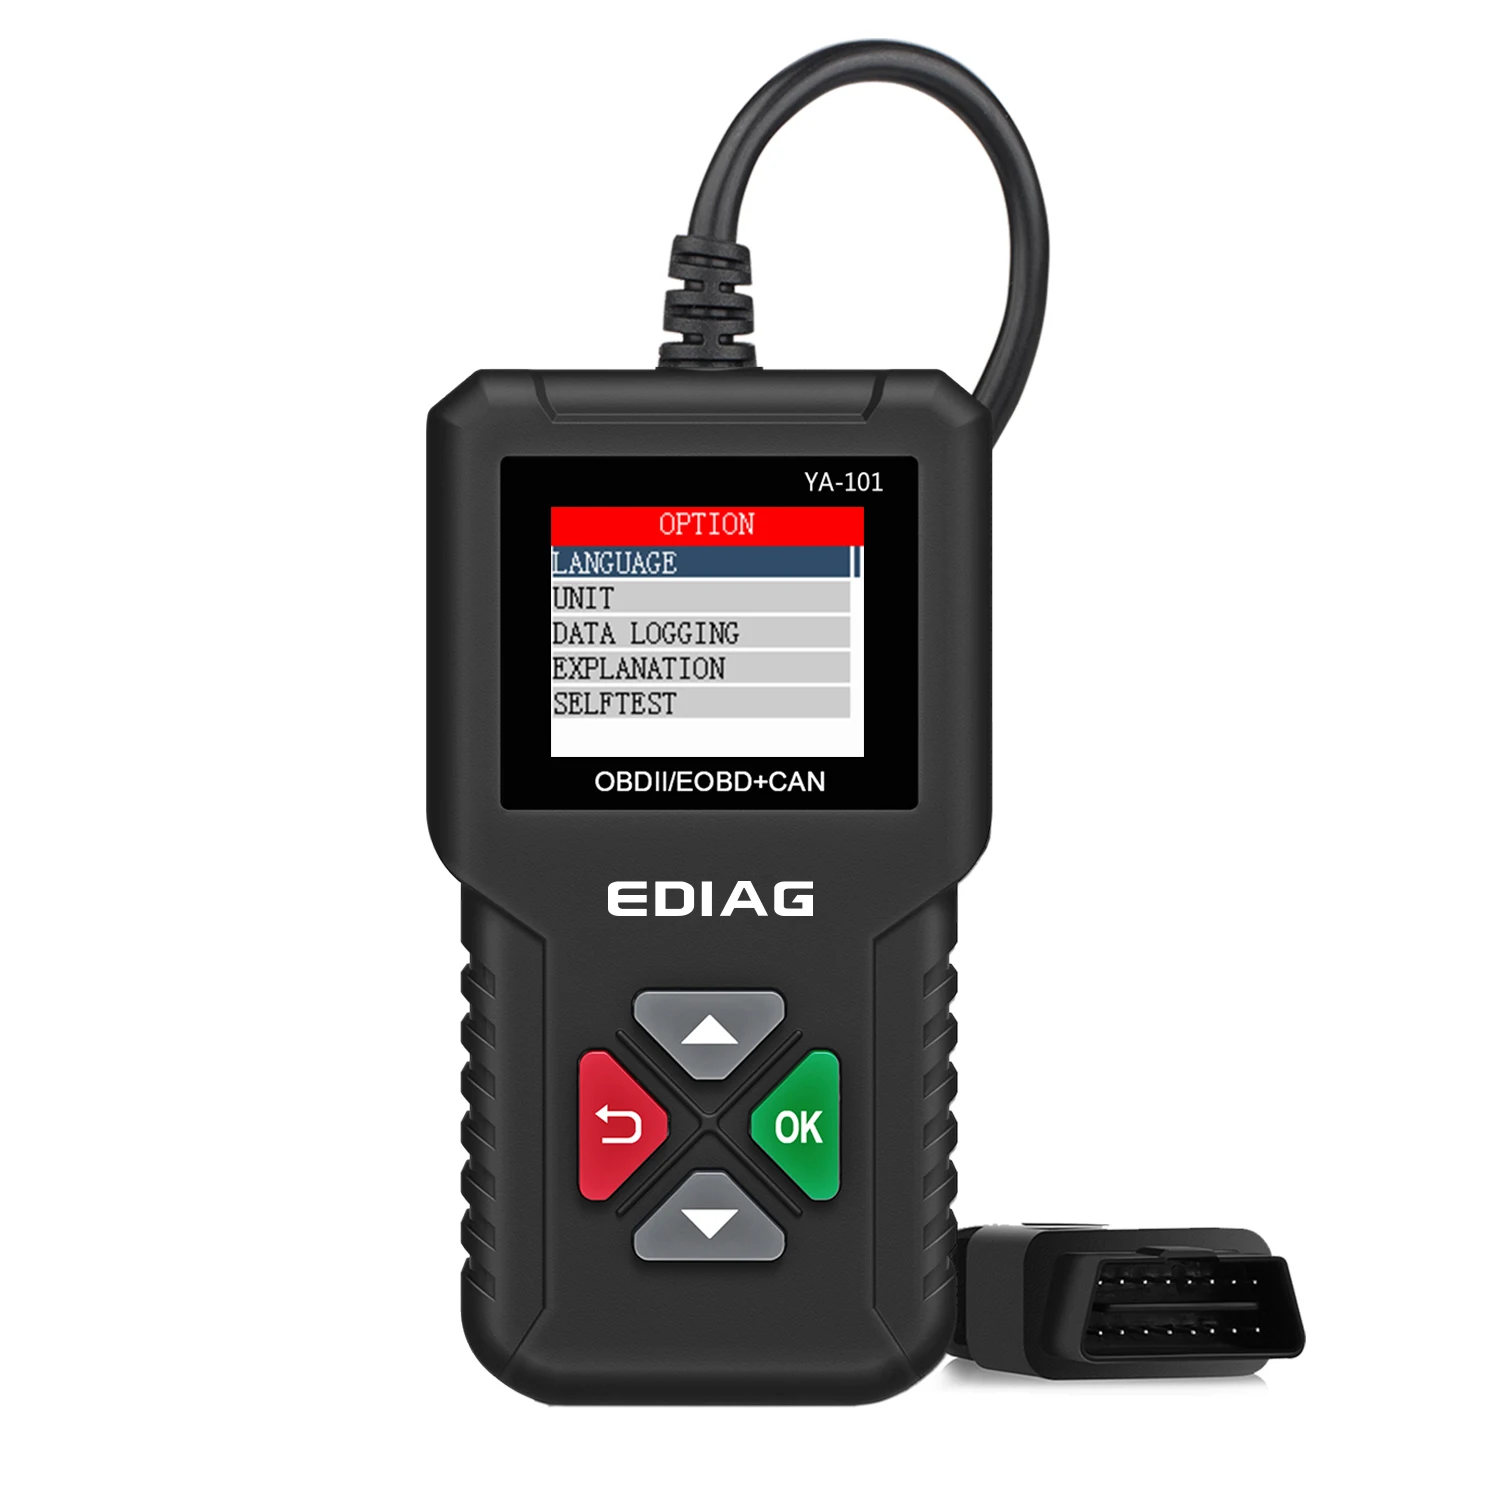 

EDIAG YA101 OBD II/EOBD Auto Code Reader Automotive OBD2 Scanner full OBDII function PK CR3001 AD310 Car Diagnostic Tool